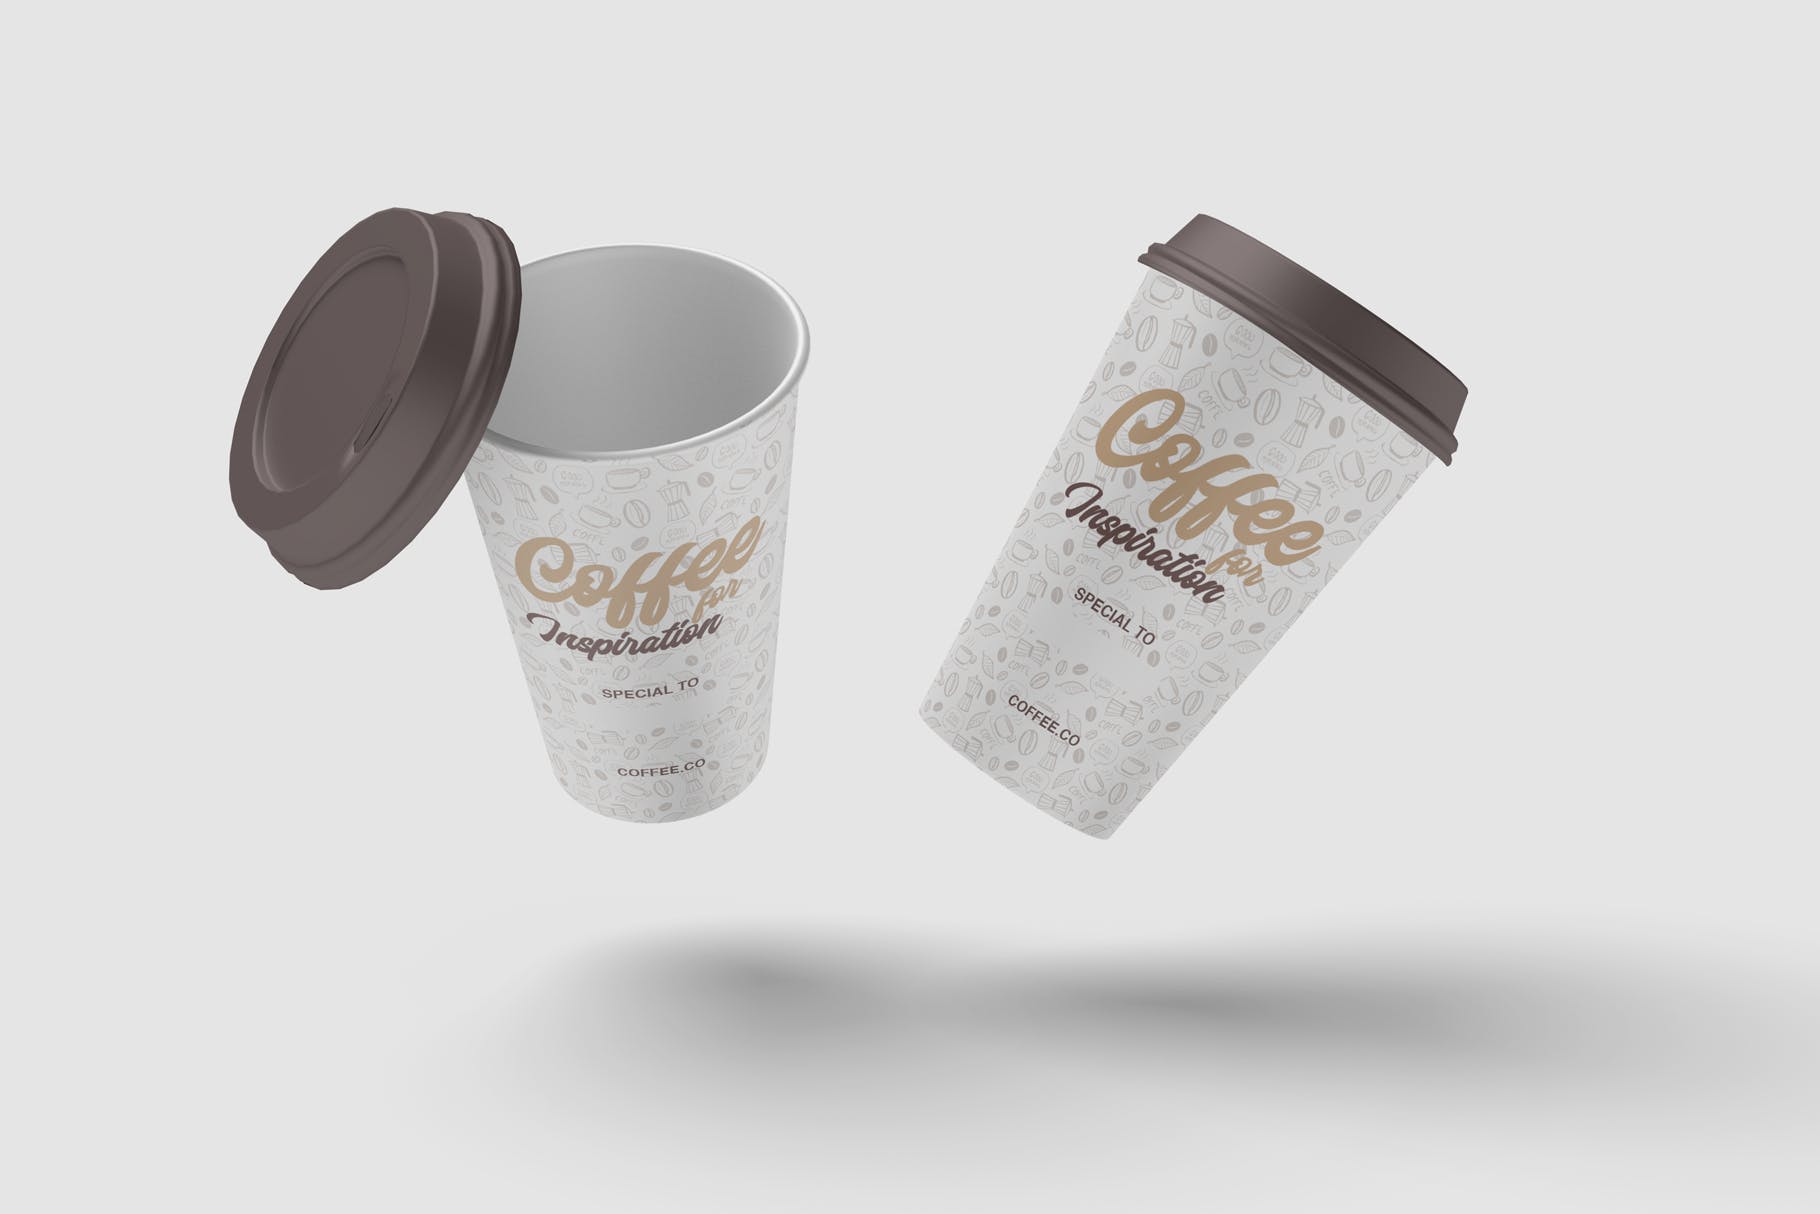 咖啡纸杯外观图案设计预览素材库精选 Cup of Coffee Mockup插图(3)